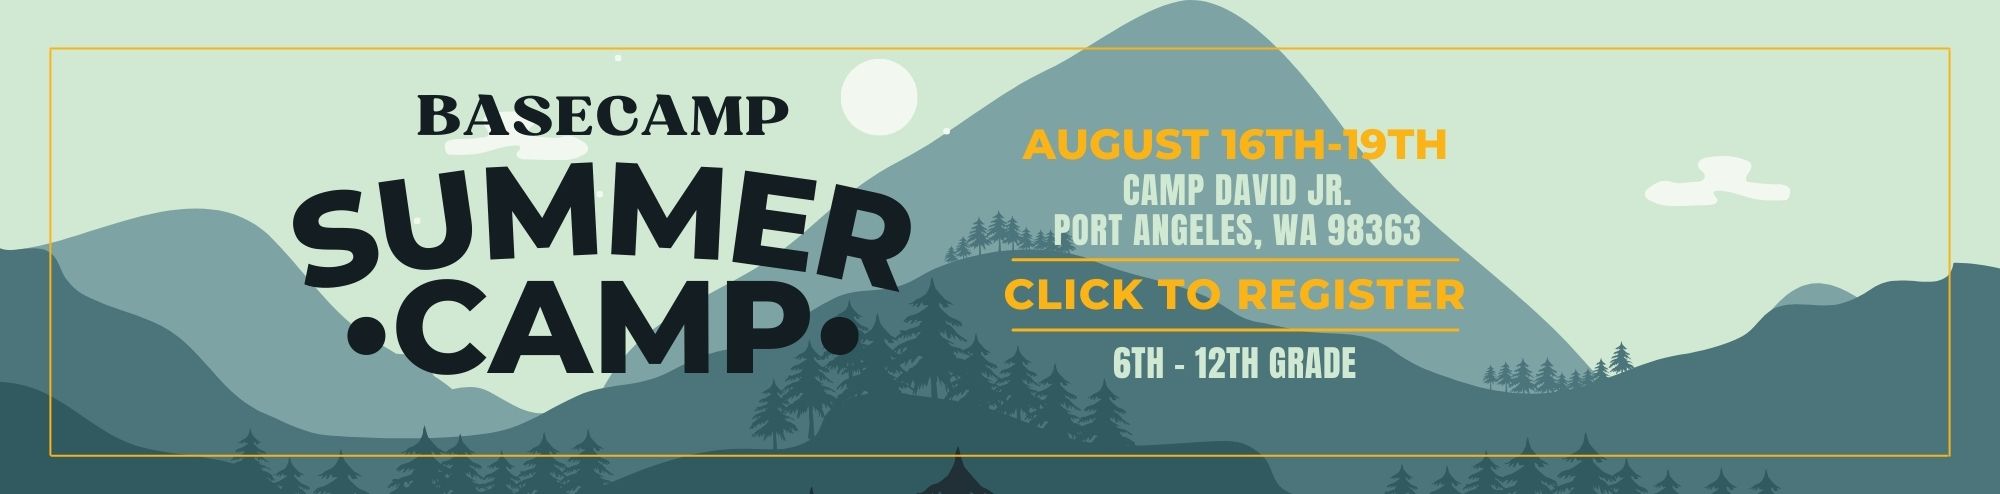 Basecamp Summer Camp